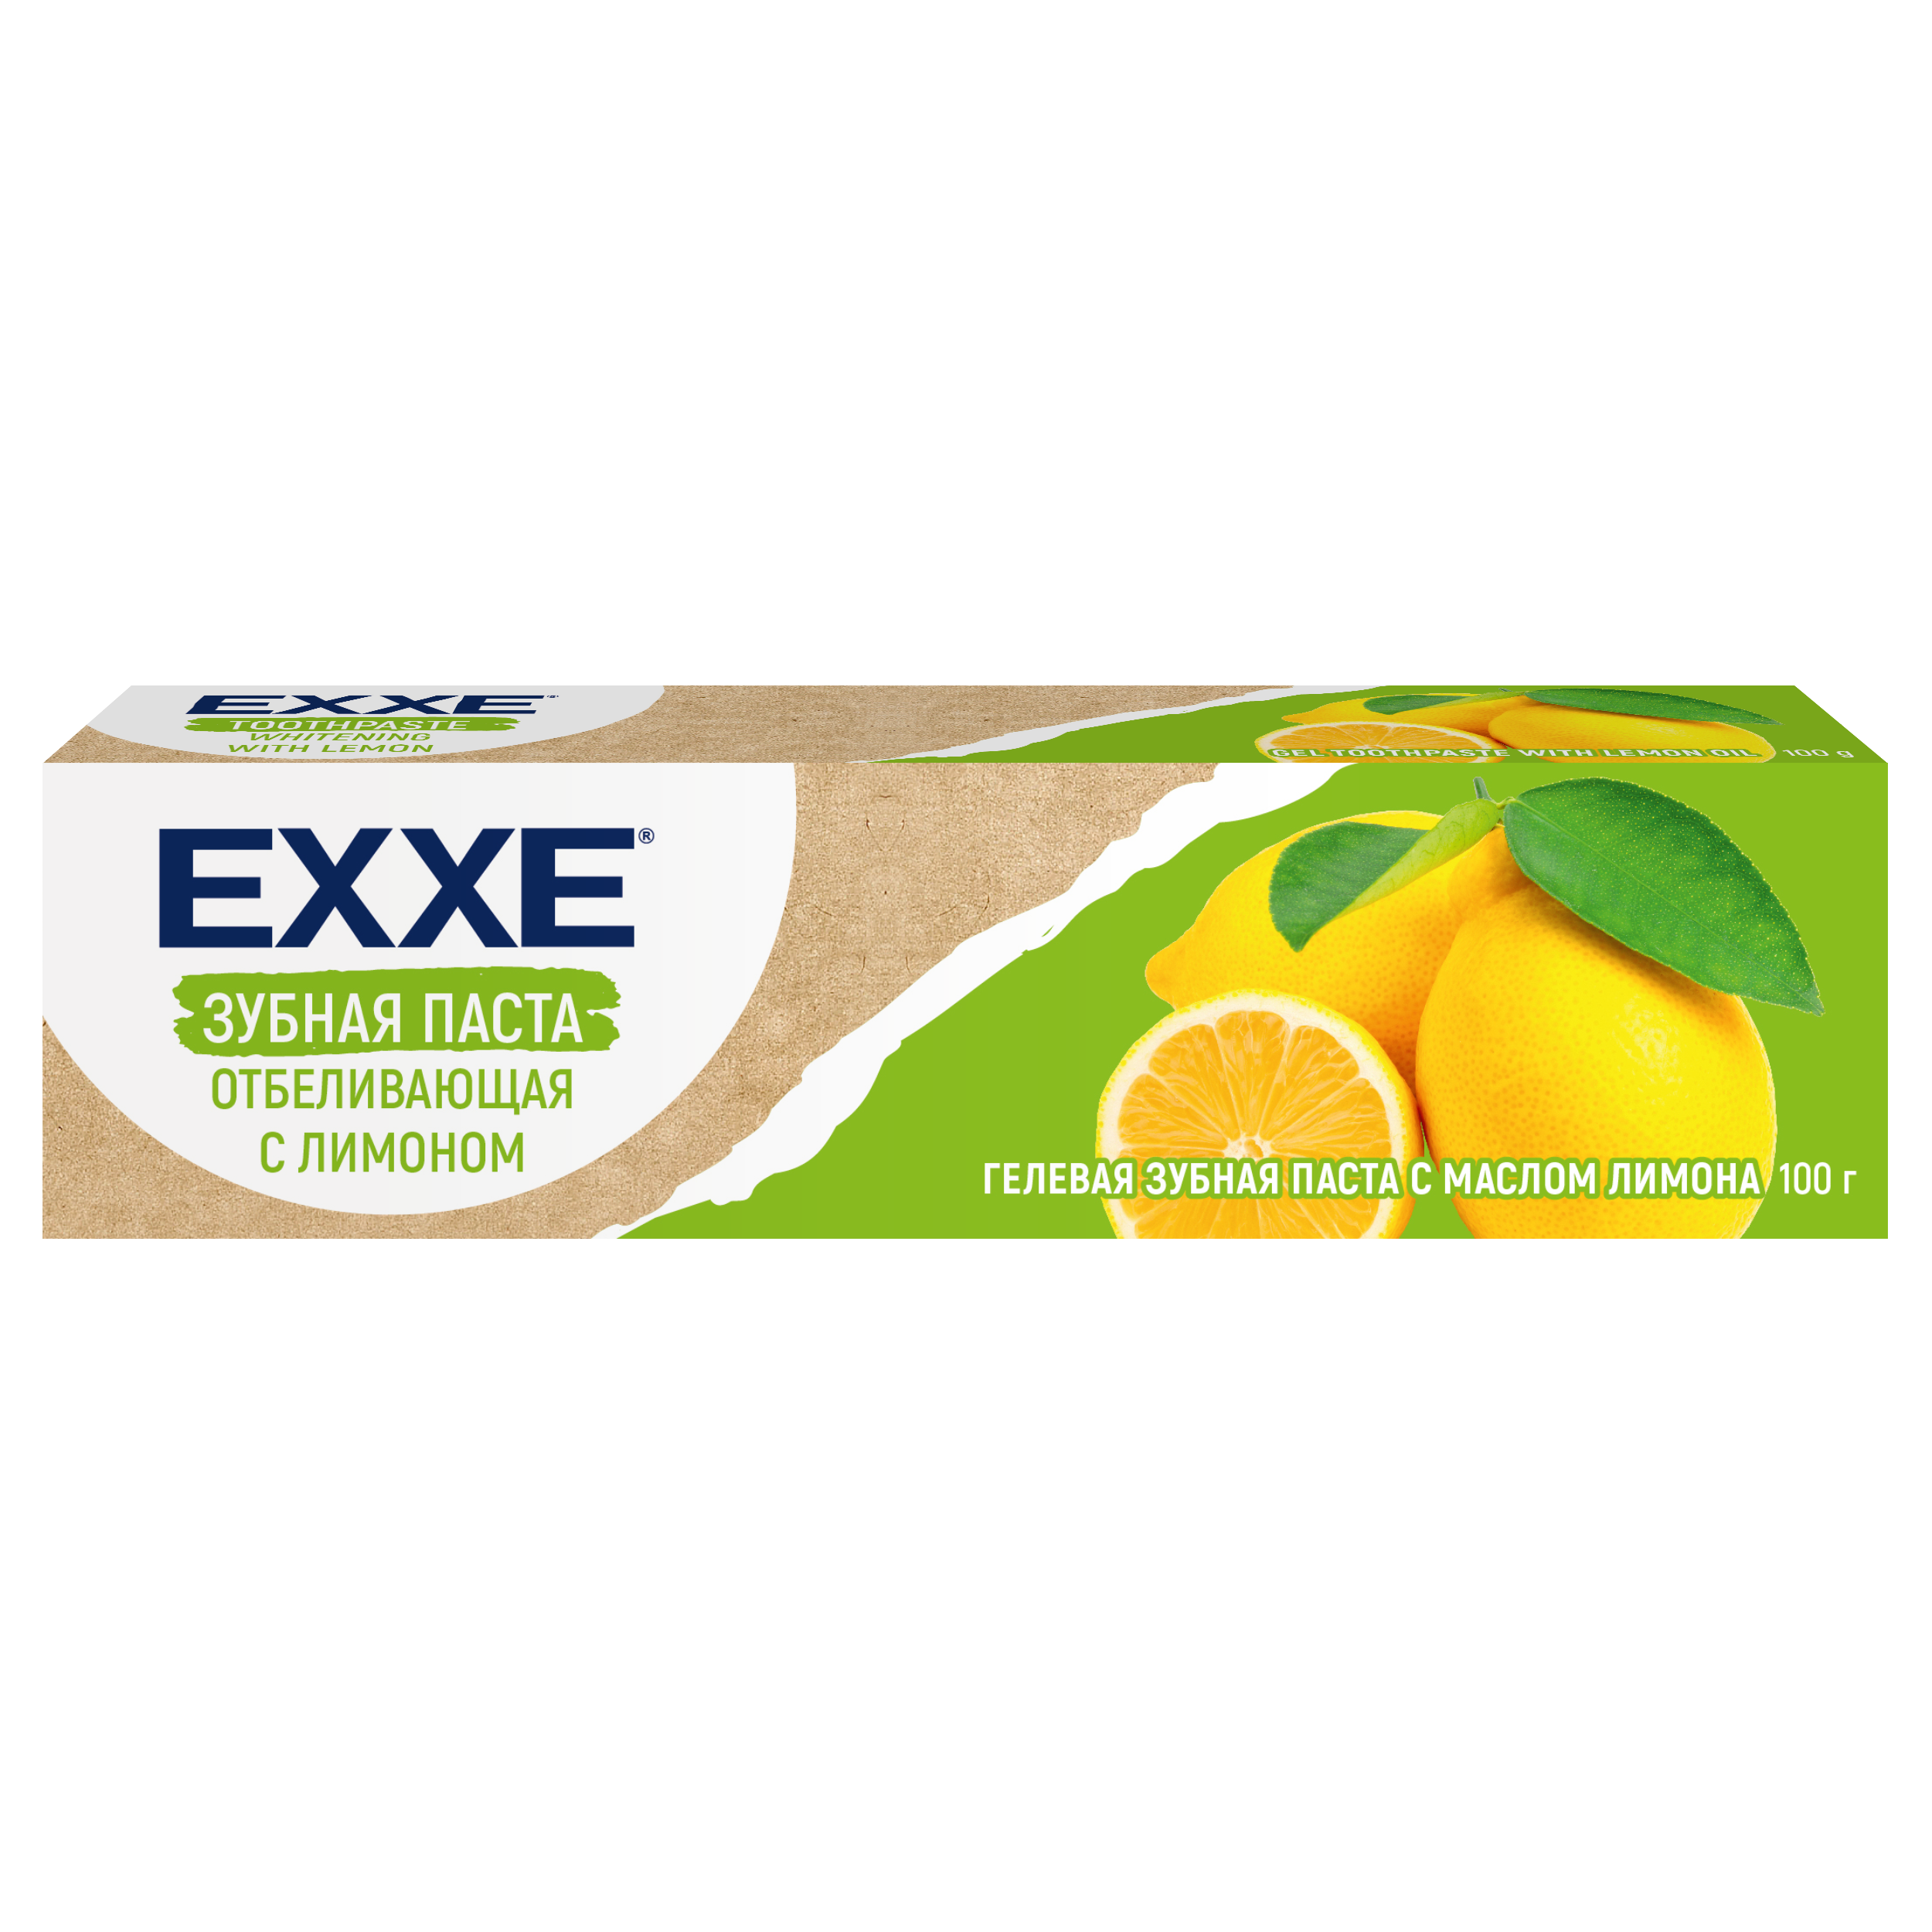 Зубная паста Exxe Отбеливающая с лимоном, 100 г биобьюти зубной порошок 3 отбеливание с лимоном 50 г